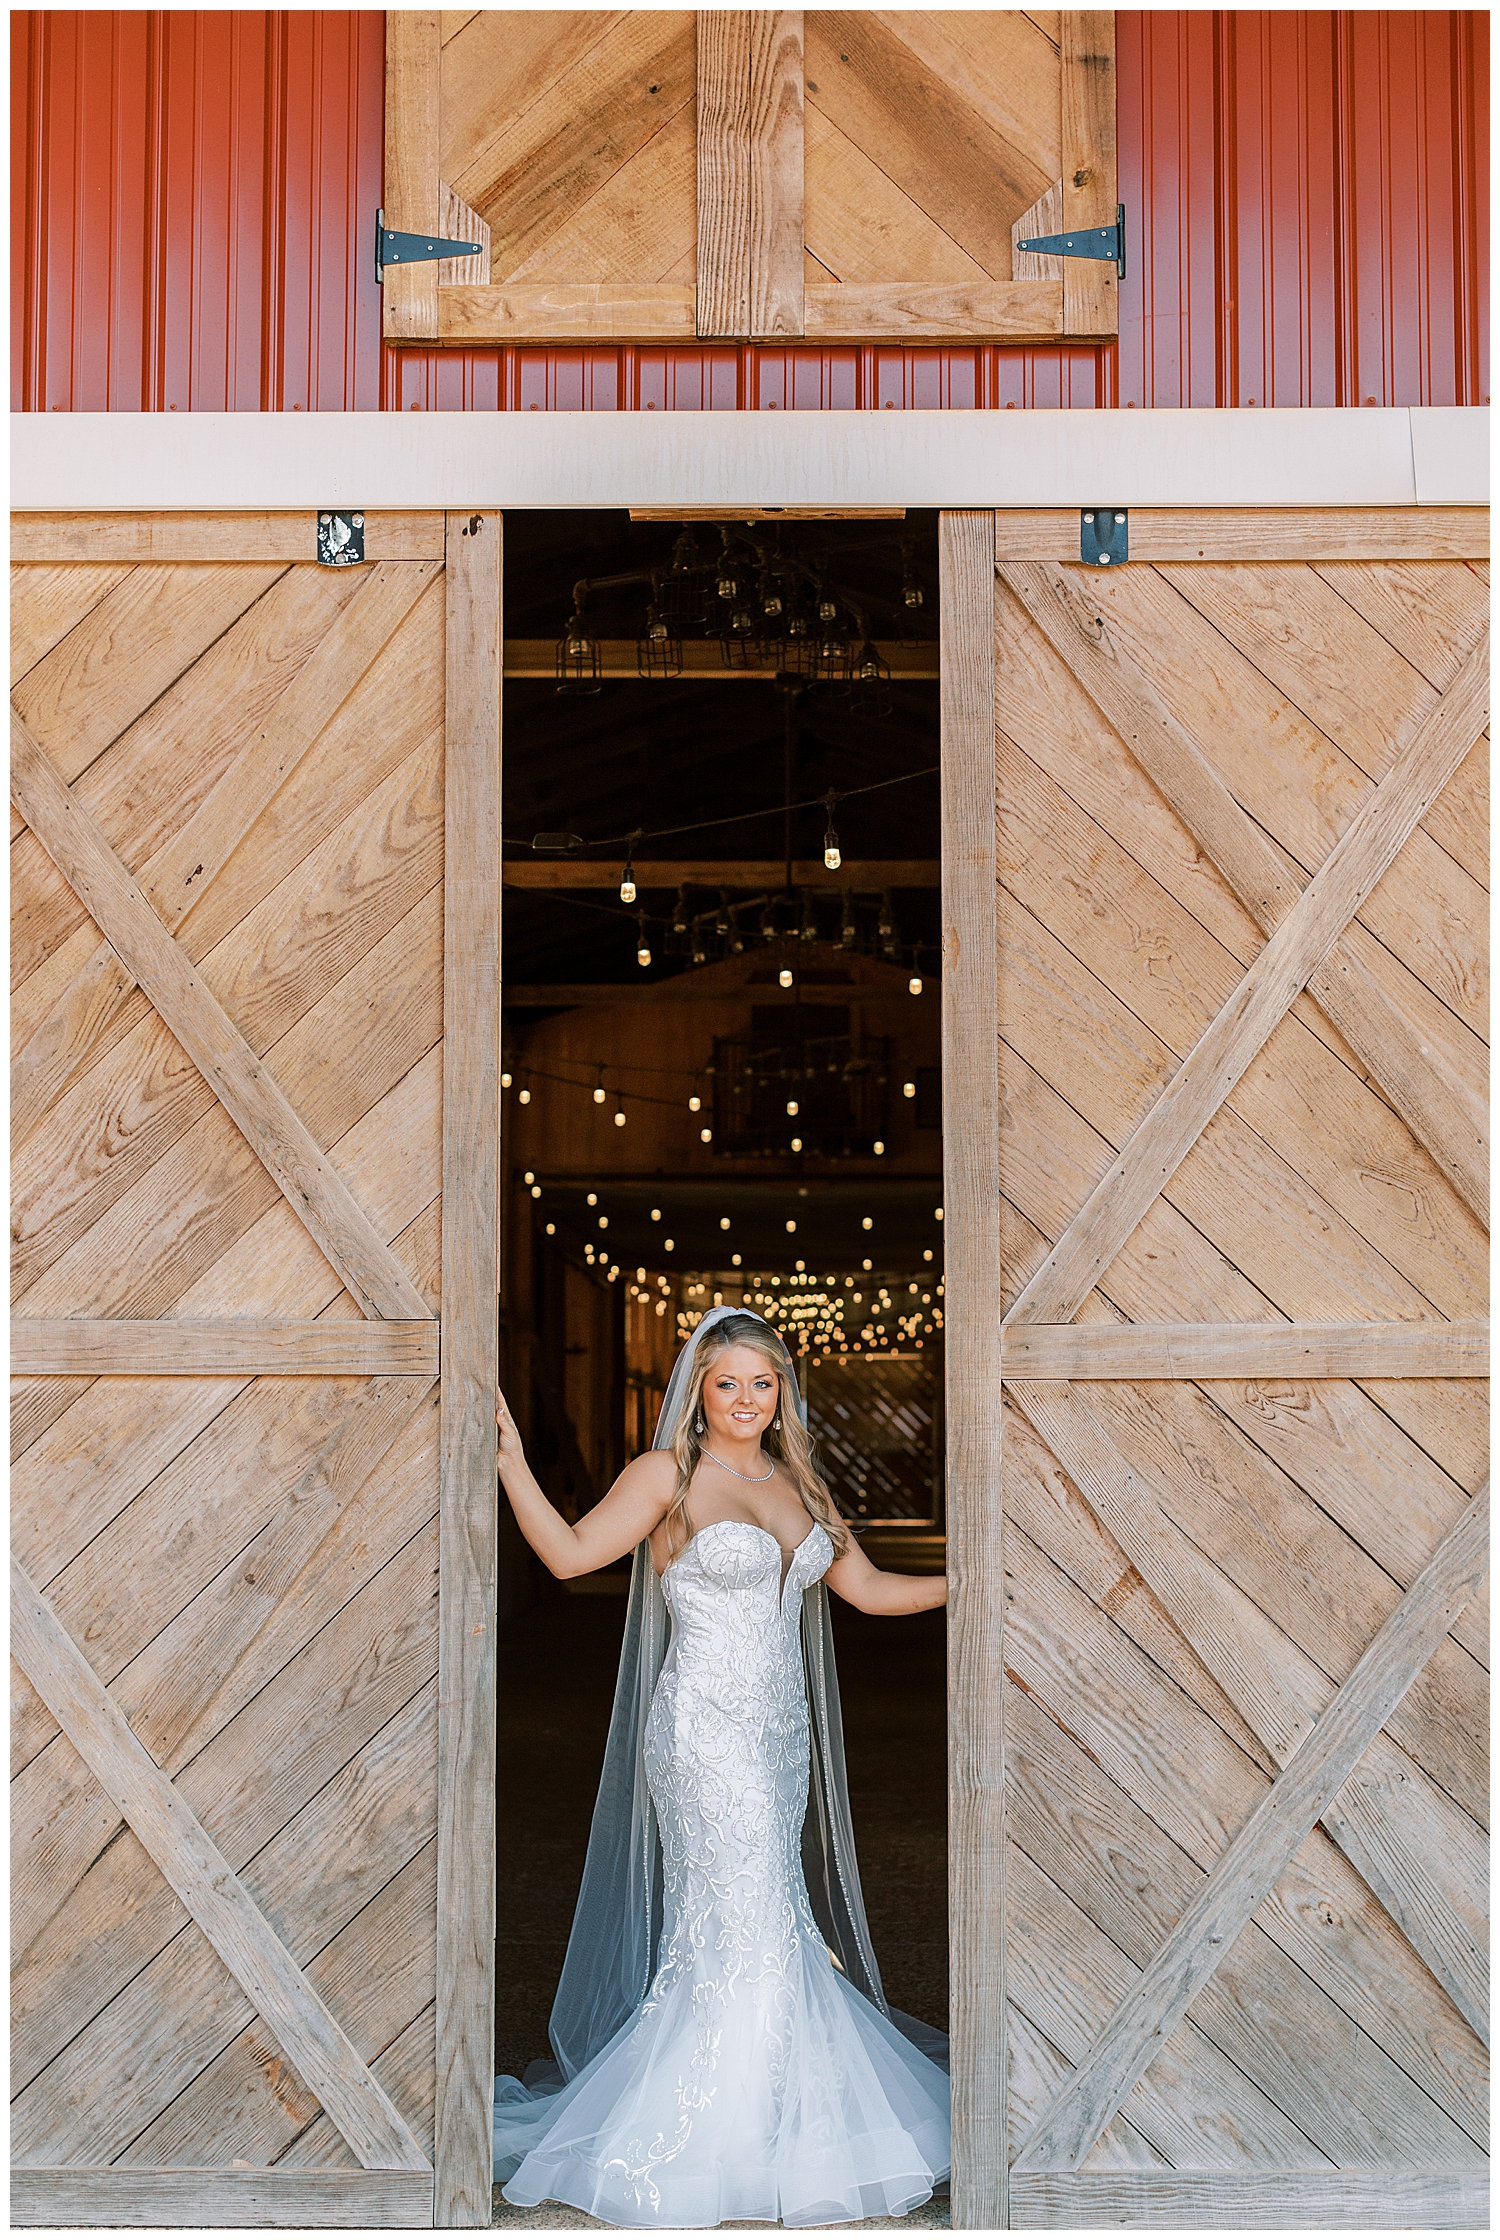 A bride stands between the barn doors.